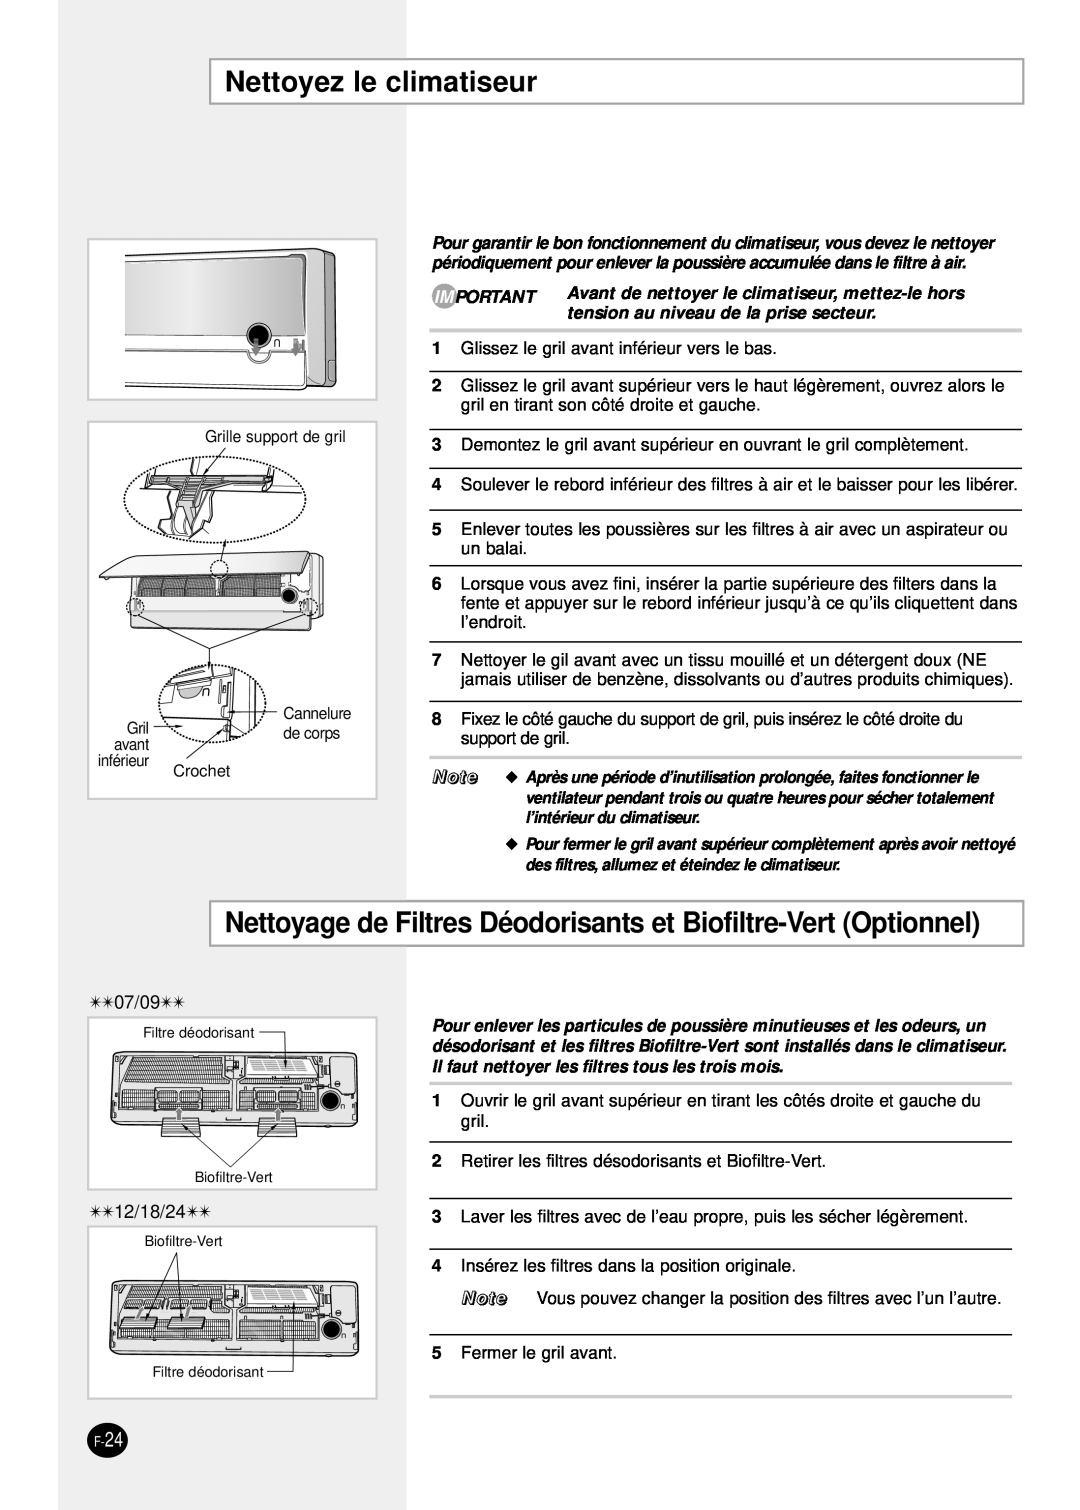 Samsung SH24TP6 manual Nettoyez le climatiseur, Nettoyage de Filtres Déodorisants et Biofiltre-Vert Optionnel 